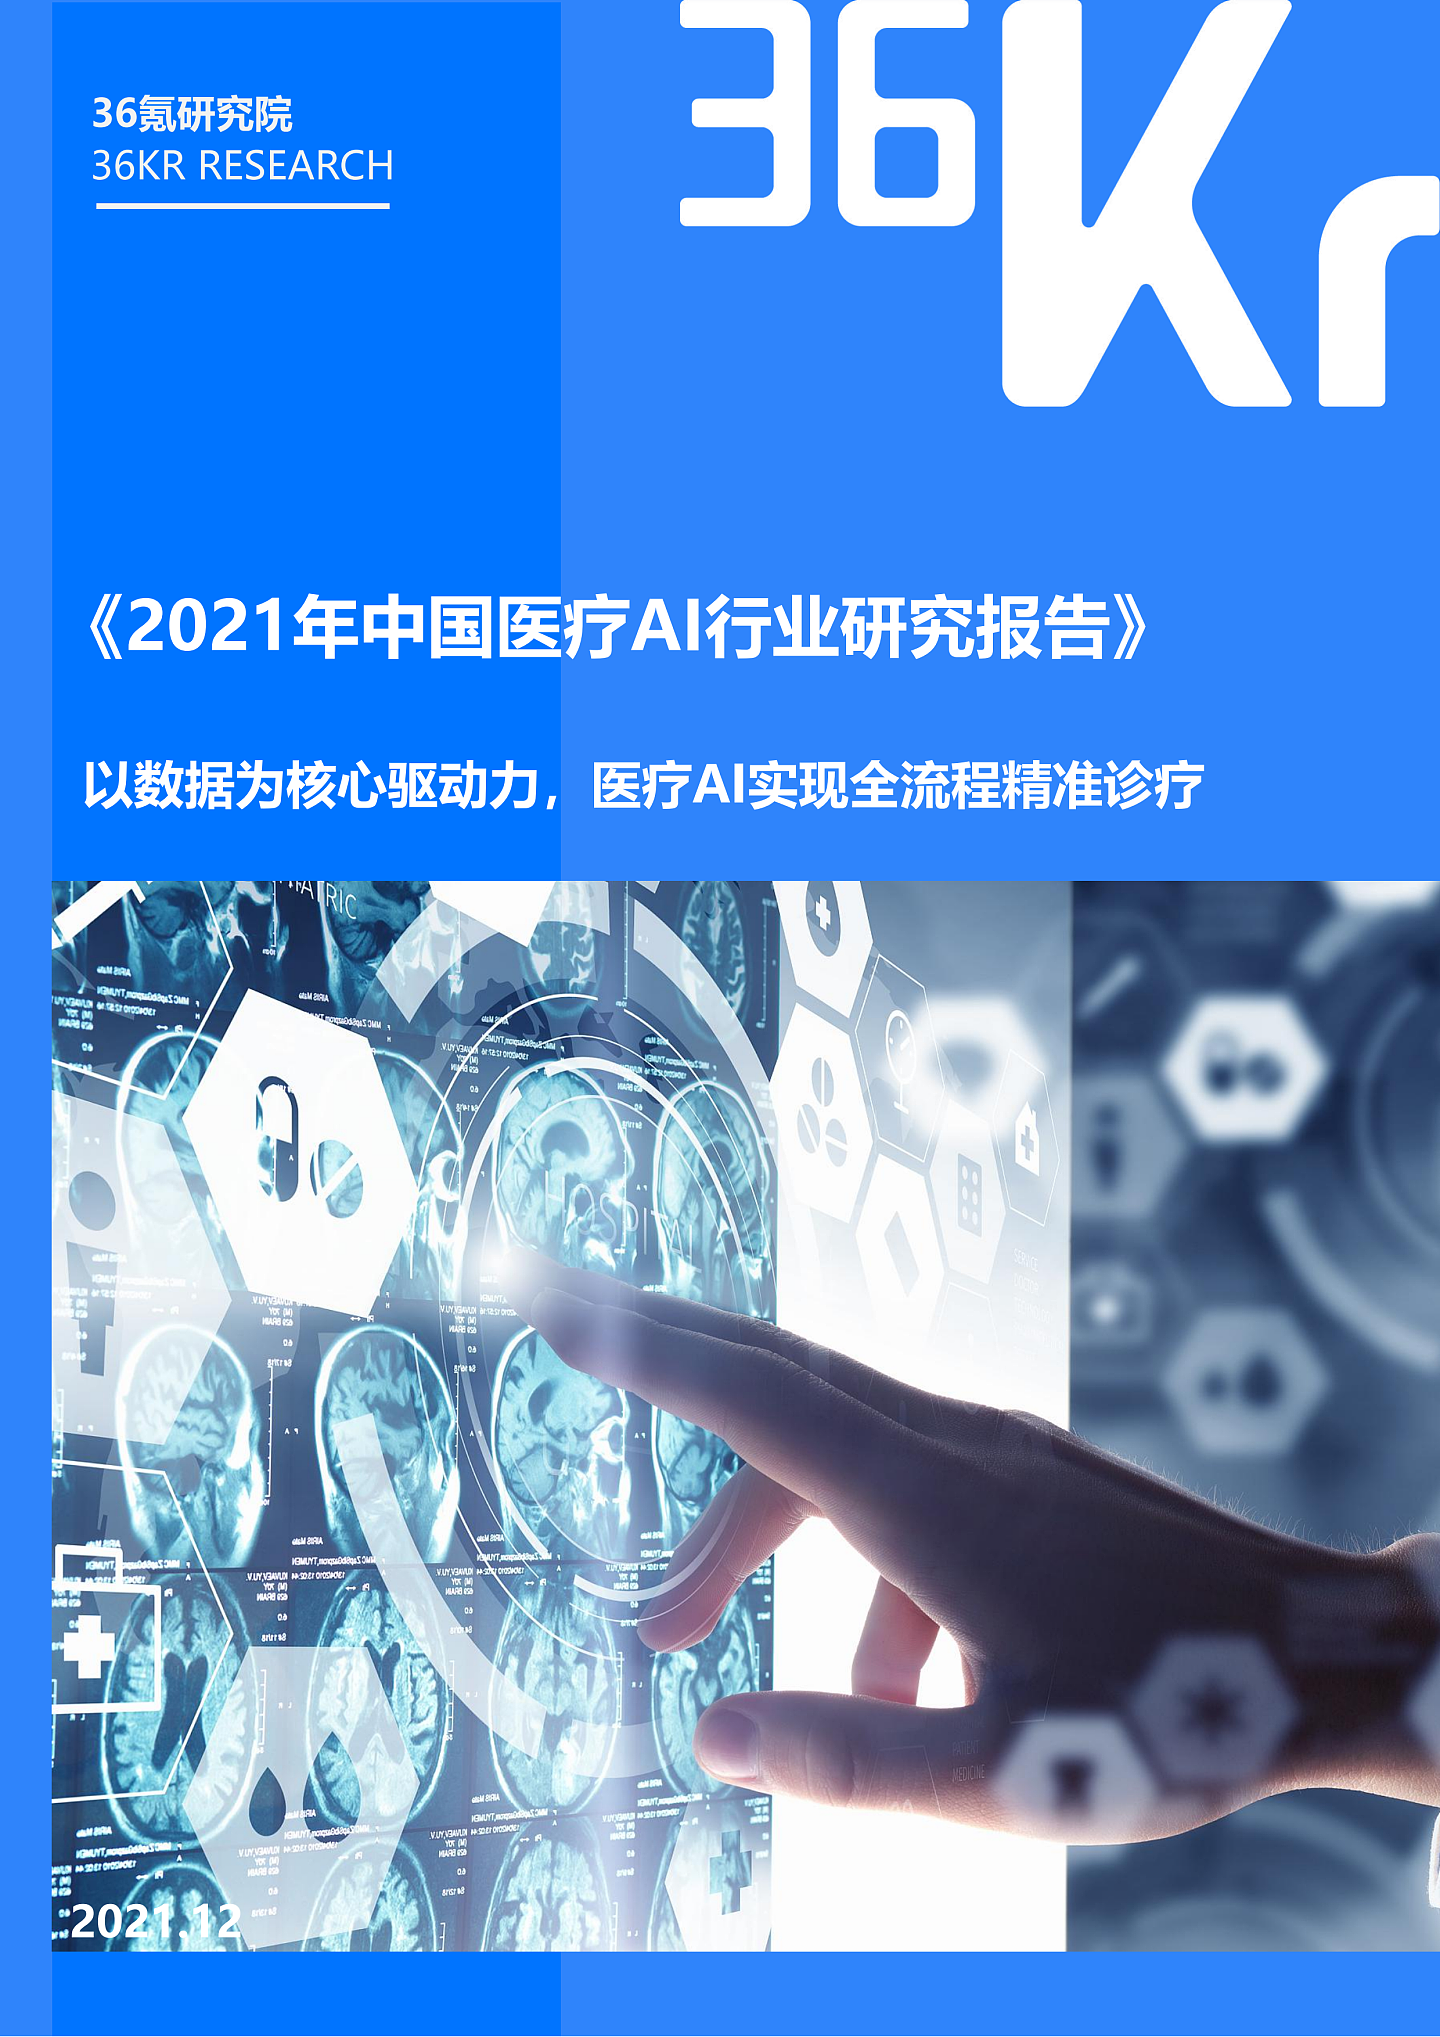 36氪研究院 | 2021年中国医疗AI行业研究报告 - 3